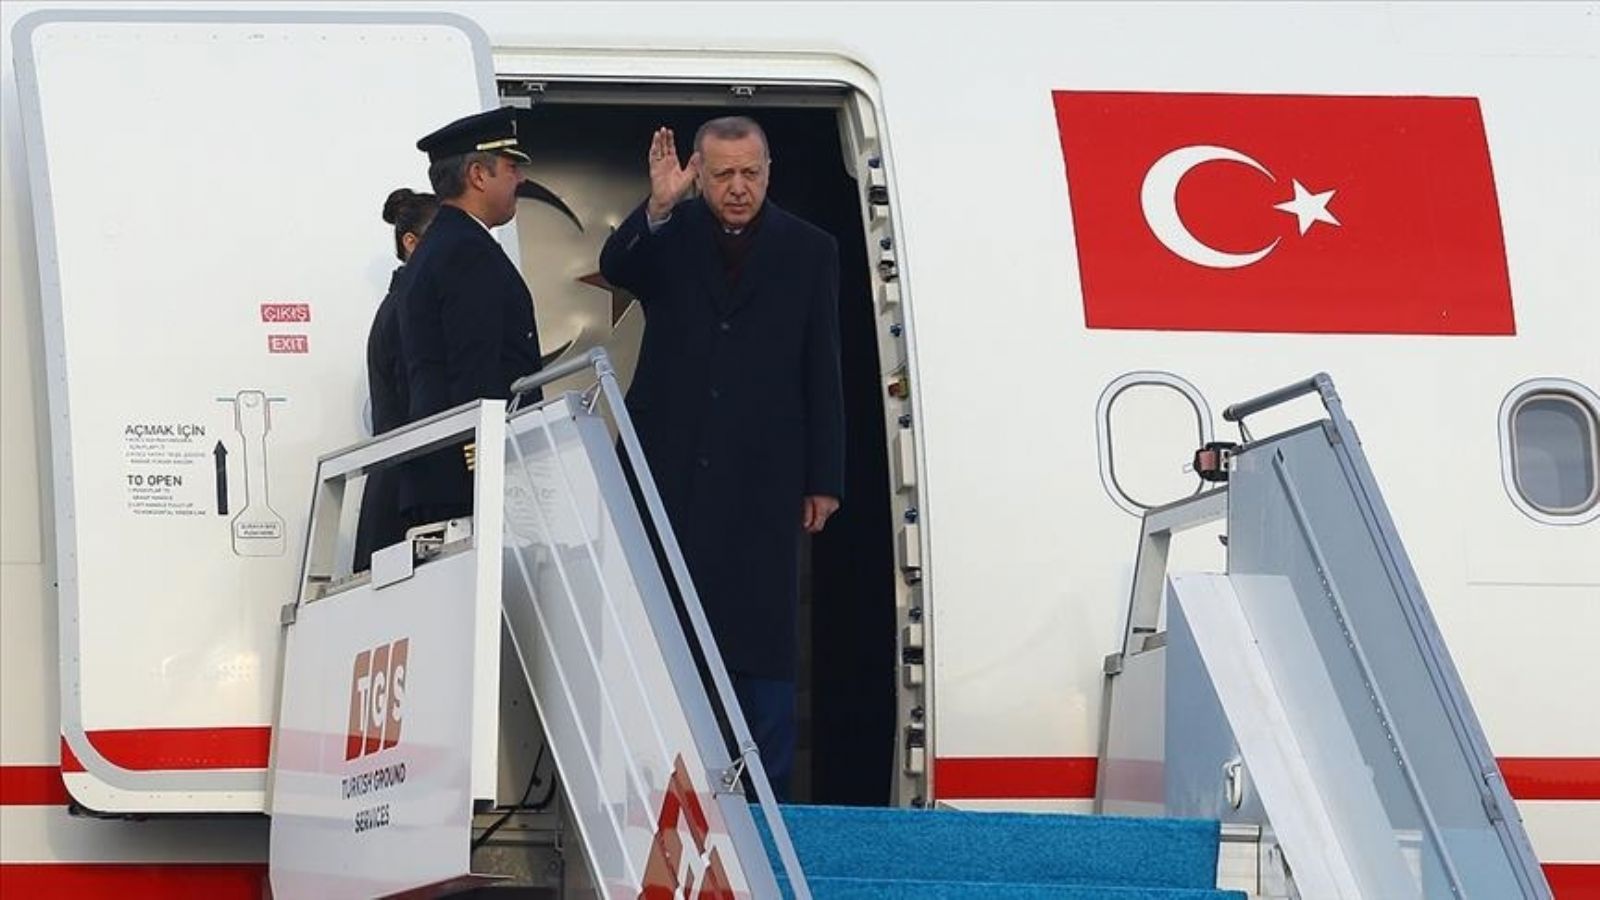 أردوغان يتوجه إلى ولاية عثمانية لتفقد المناطق المتضررة من الزلزال برفقة زعيم حزب "الحركة القومية" دولت بهتشلي